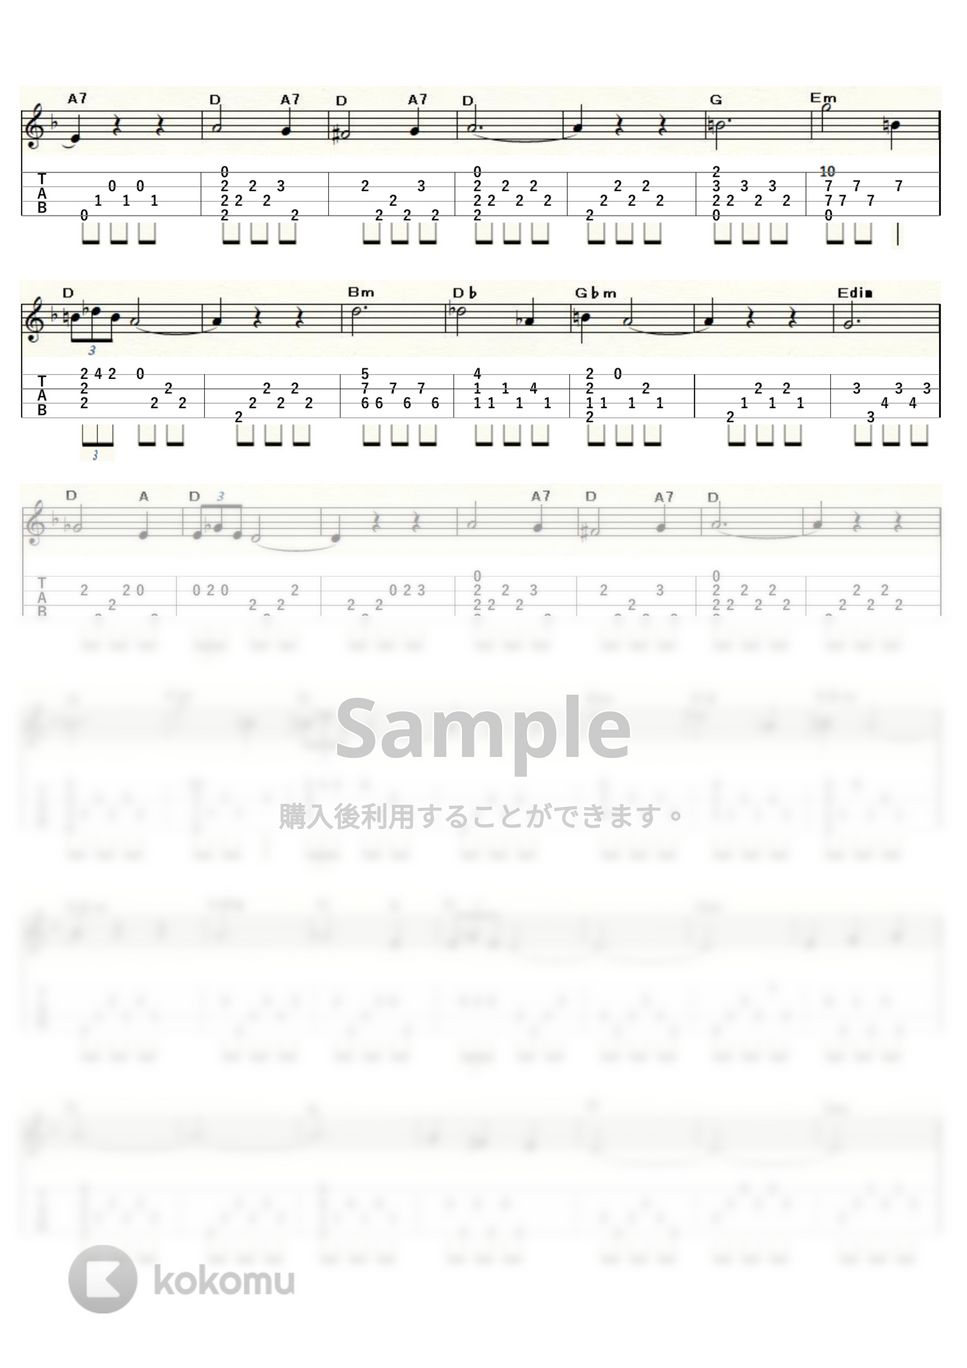 フランシスコ・タレガ - アルハンブラの想い出 (ｳｸﾚﾚｿﾛ / Low-G / 中級～上級) by ukulelepapa